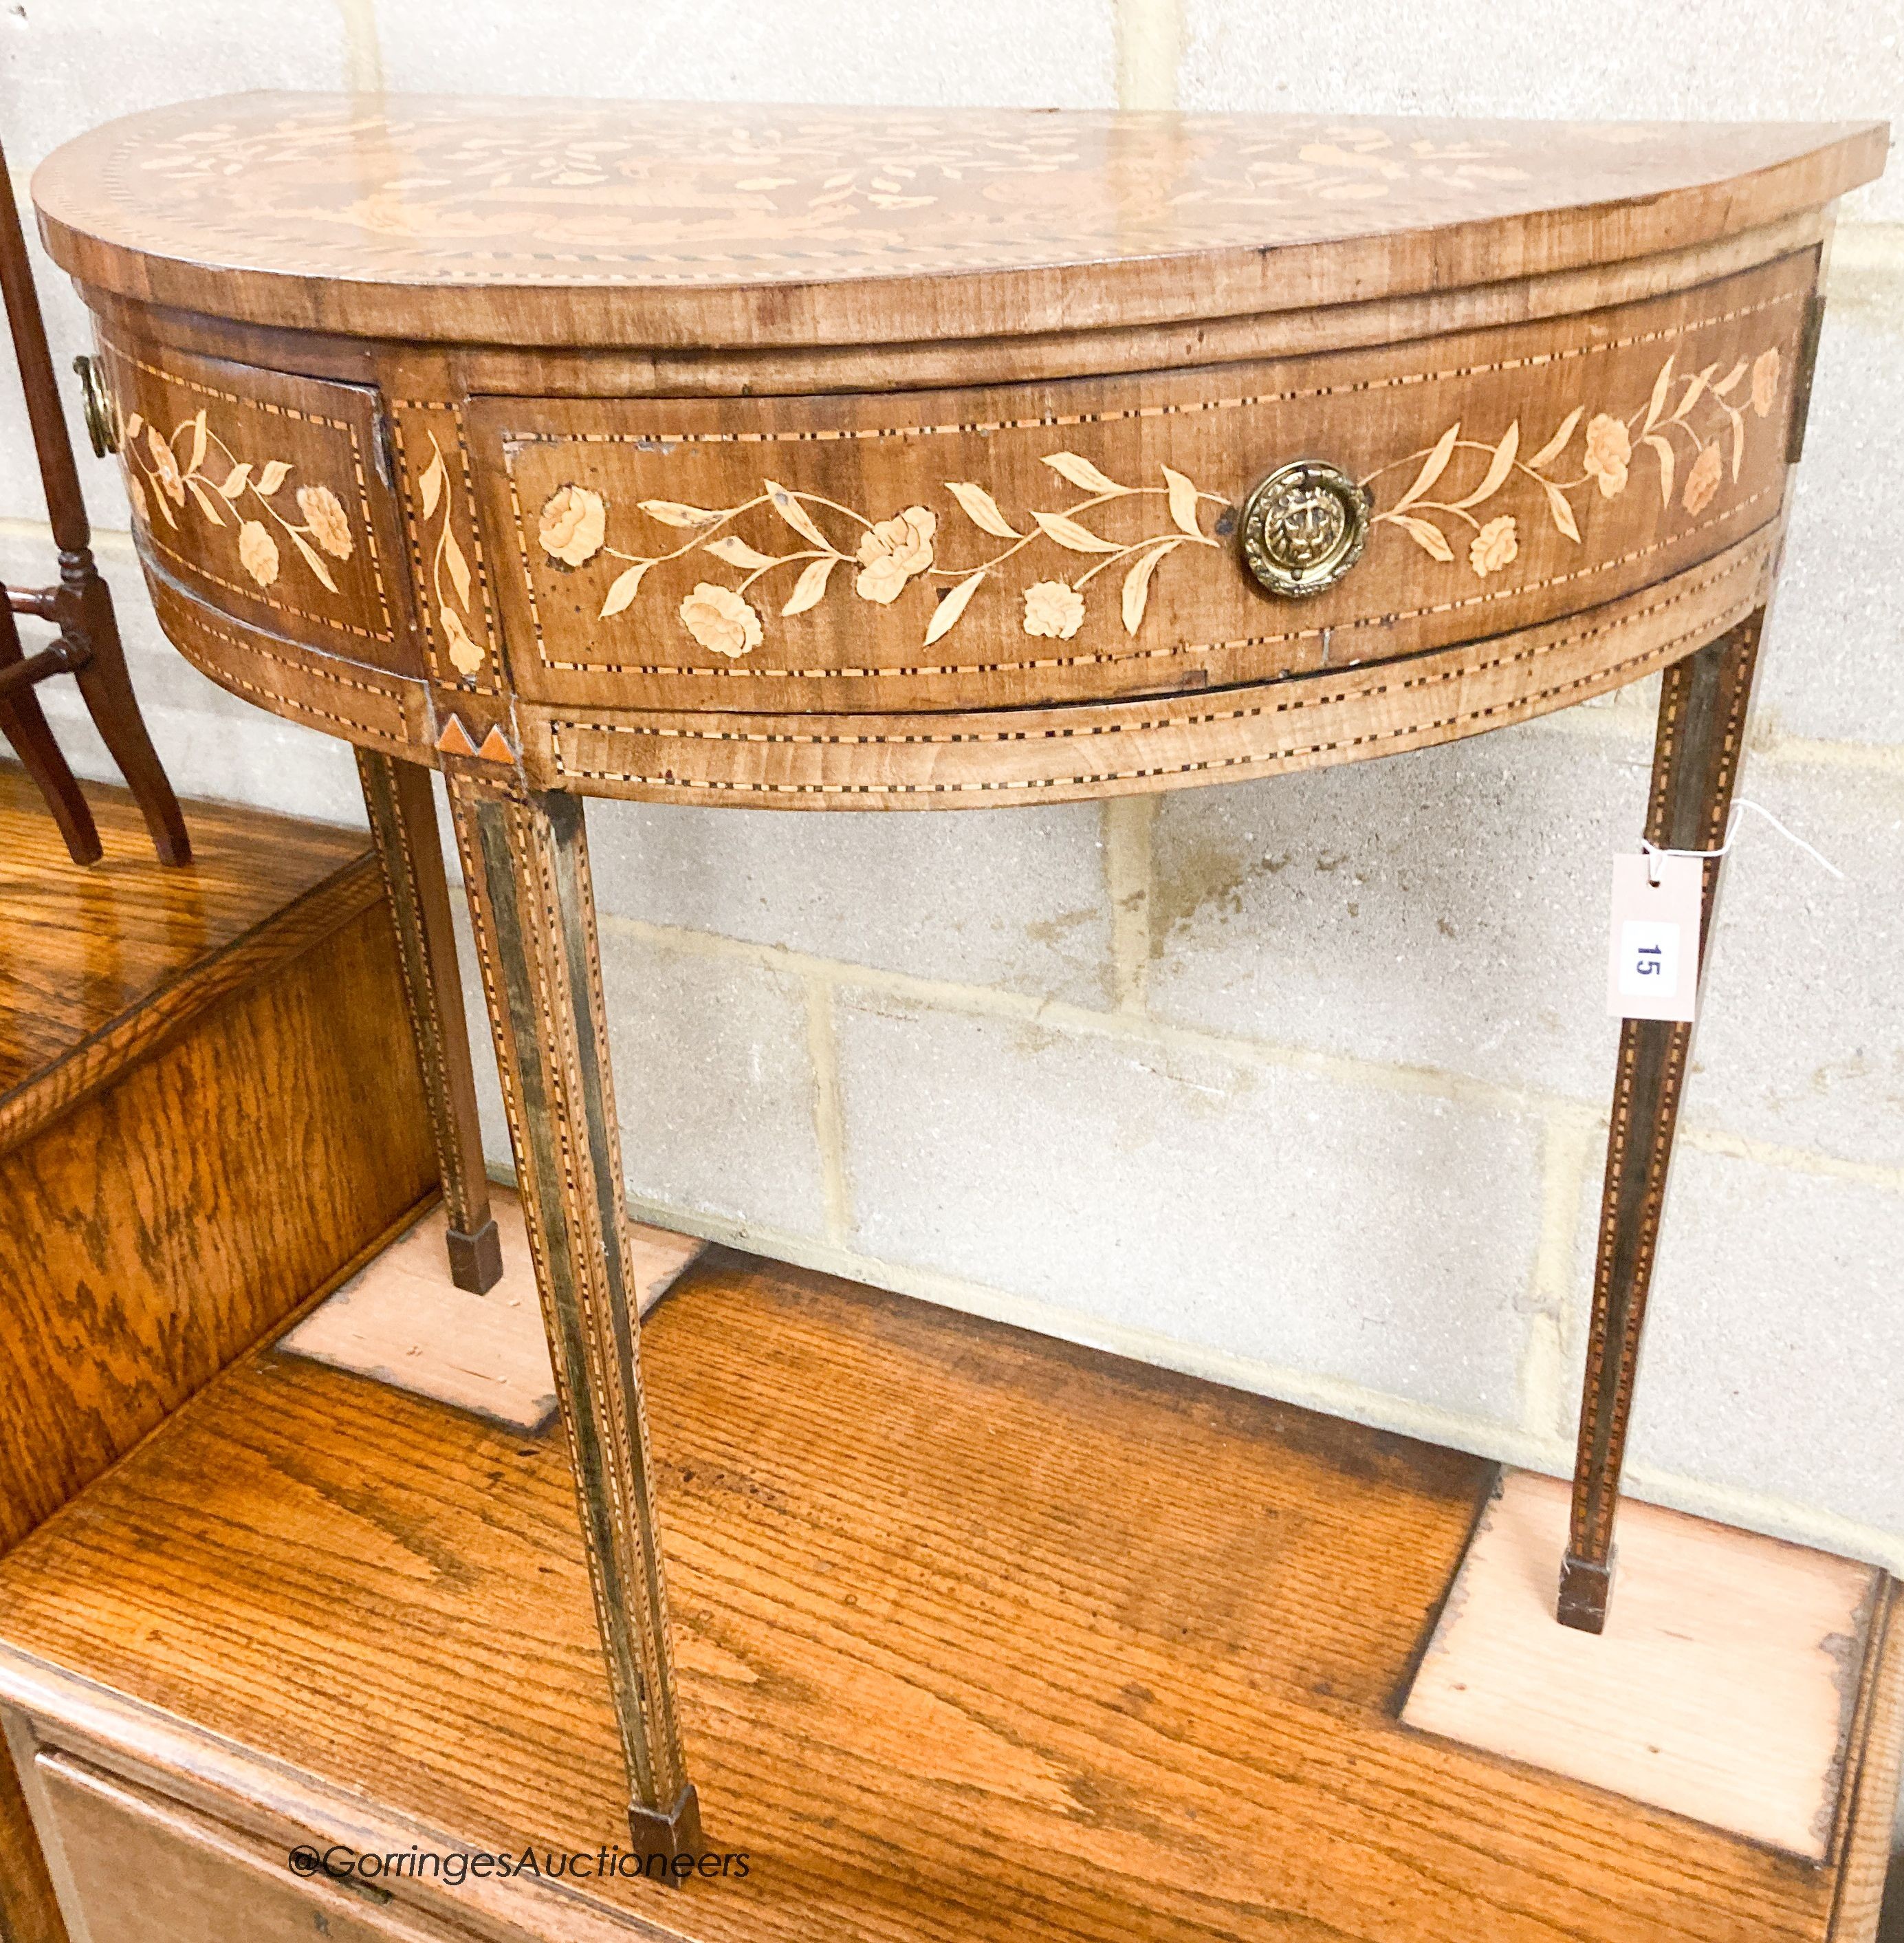 A 19th century Dutch marquetry walnut demi lune side table, width 76cm, depth 39cm, height 74cm